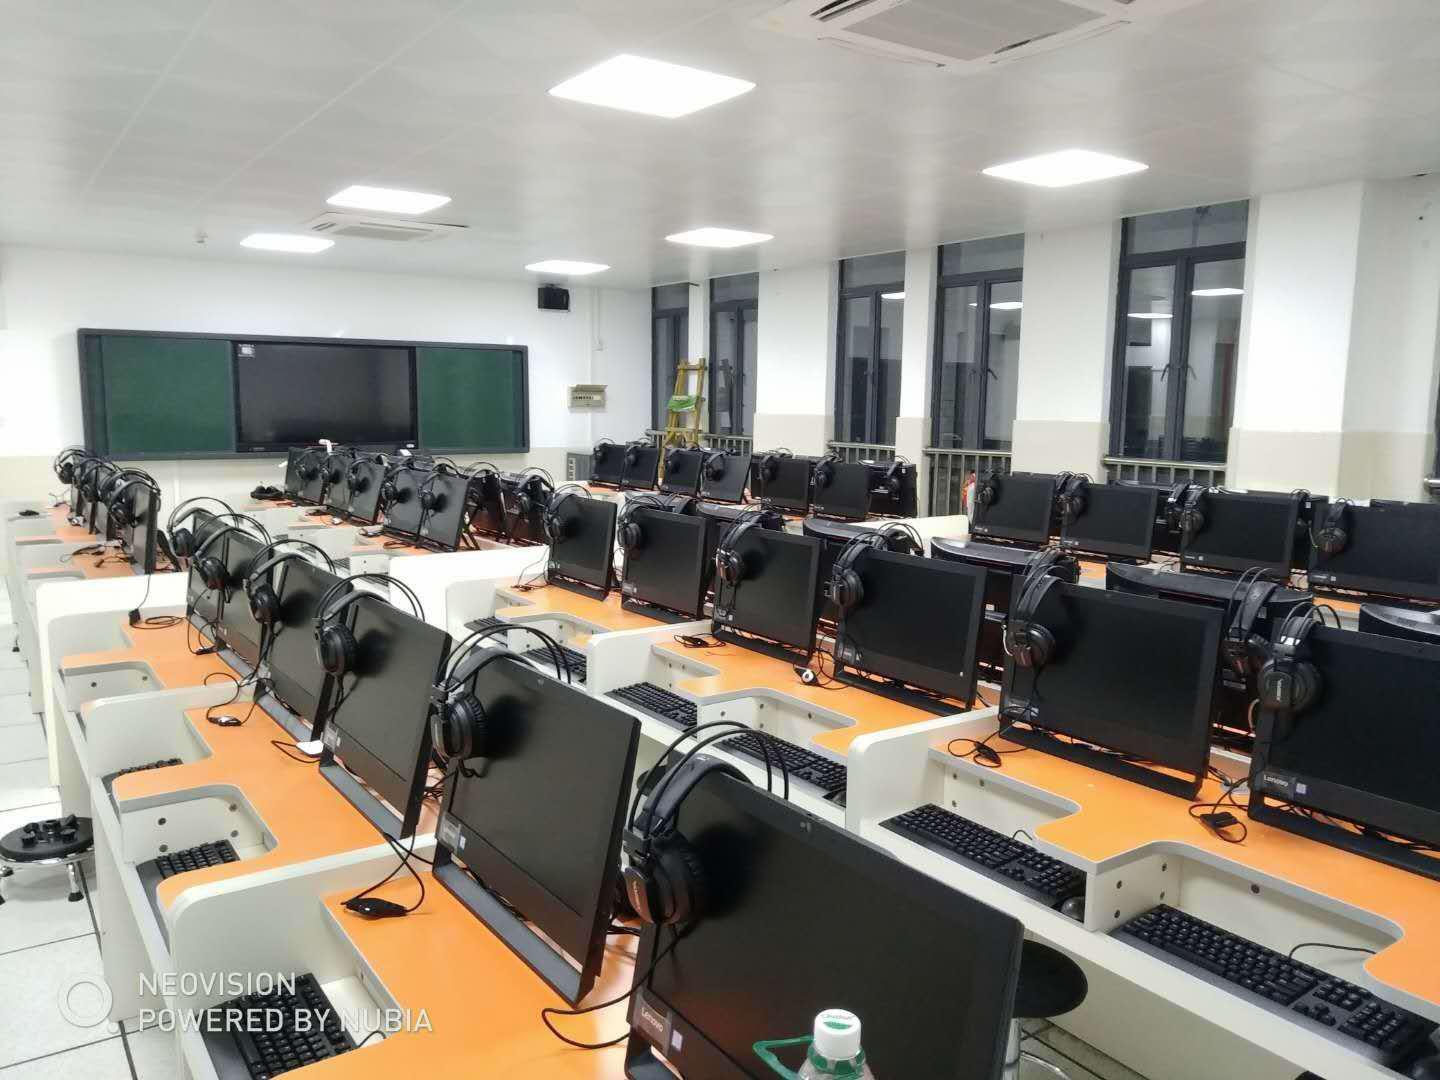 深圳市航城学校《多媒体网络电脑室（含考试系统）设备采购》